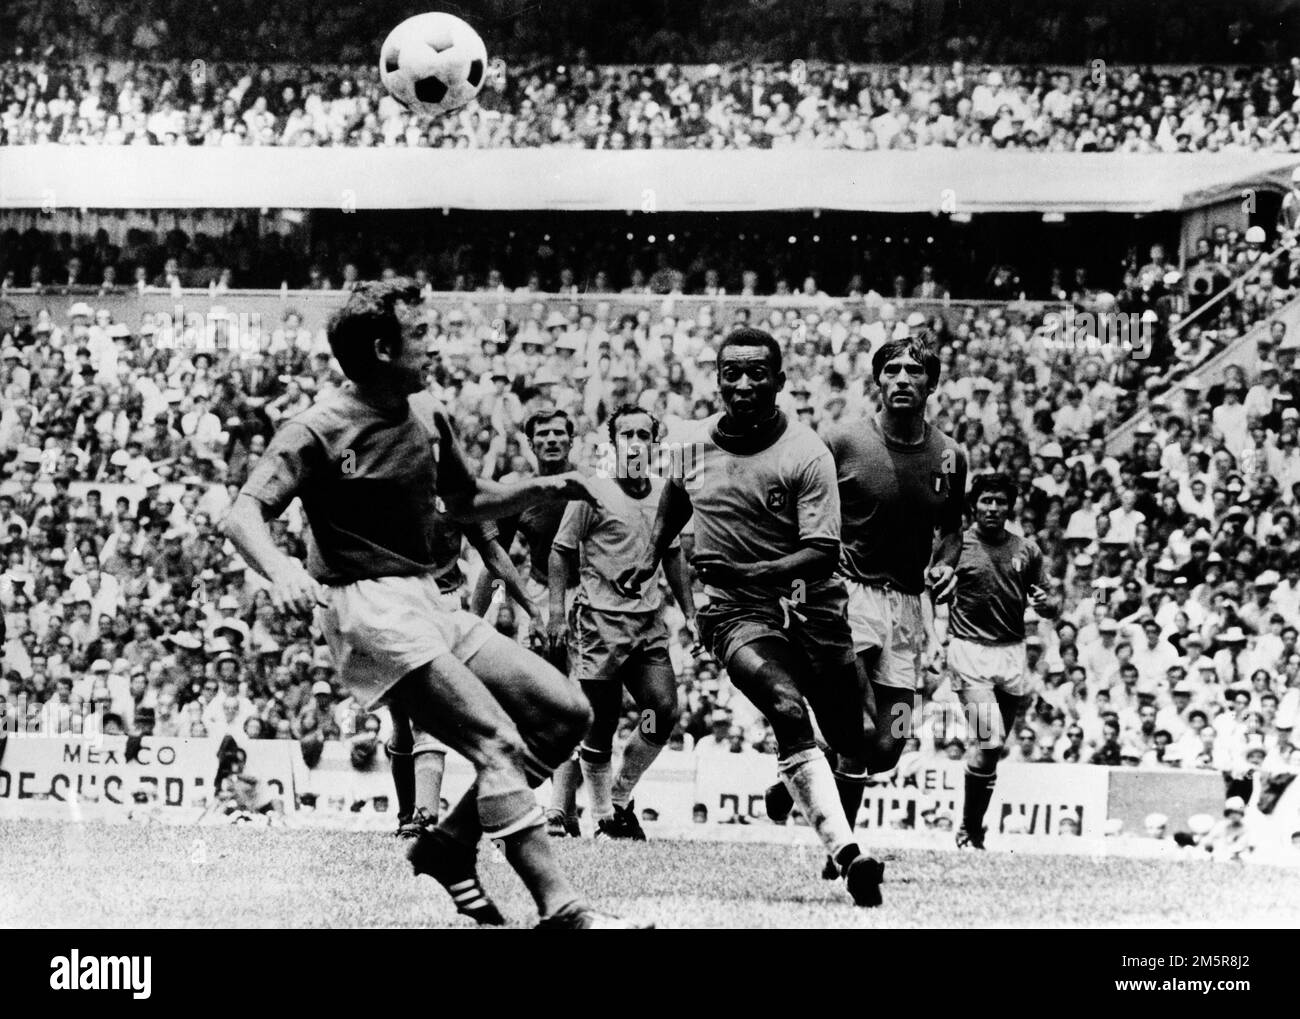 31 maggio 1970 - Città del Messico, Messico - giocatore brasiliano di calcio PELÉ che gioca nella Coppa del mondo. (Credit Image: © Keystone Press Agency/ZUMA Press Wire) Foto Stock